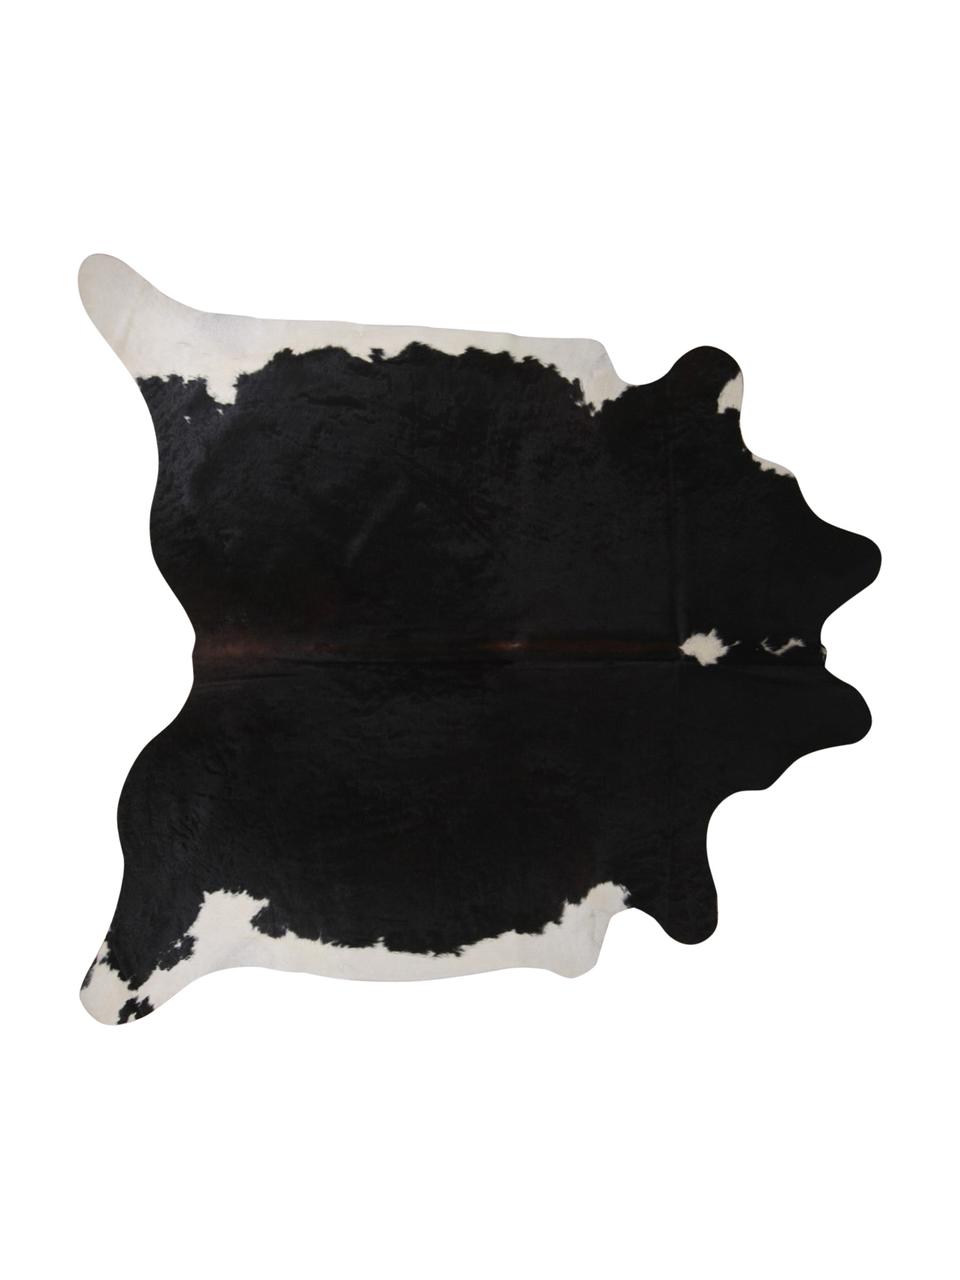 Dywan ze skóry bydlęcej Pisces, Skóra bydlęca, Czarny, biały, Unikatowa skóra bydlęca 967, 160 x 180 cm